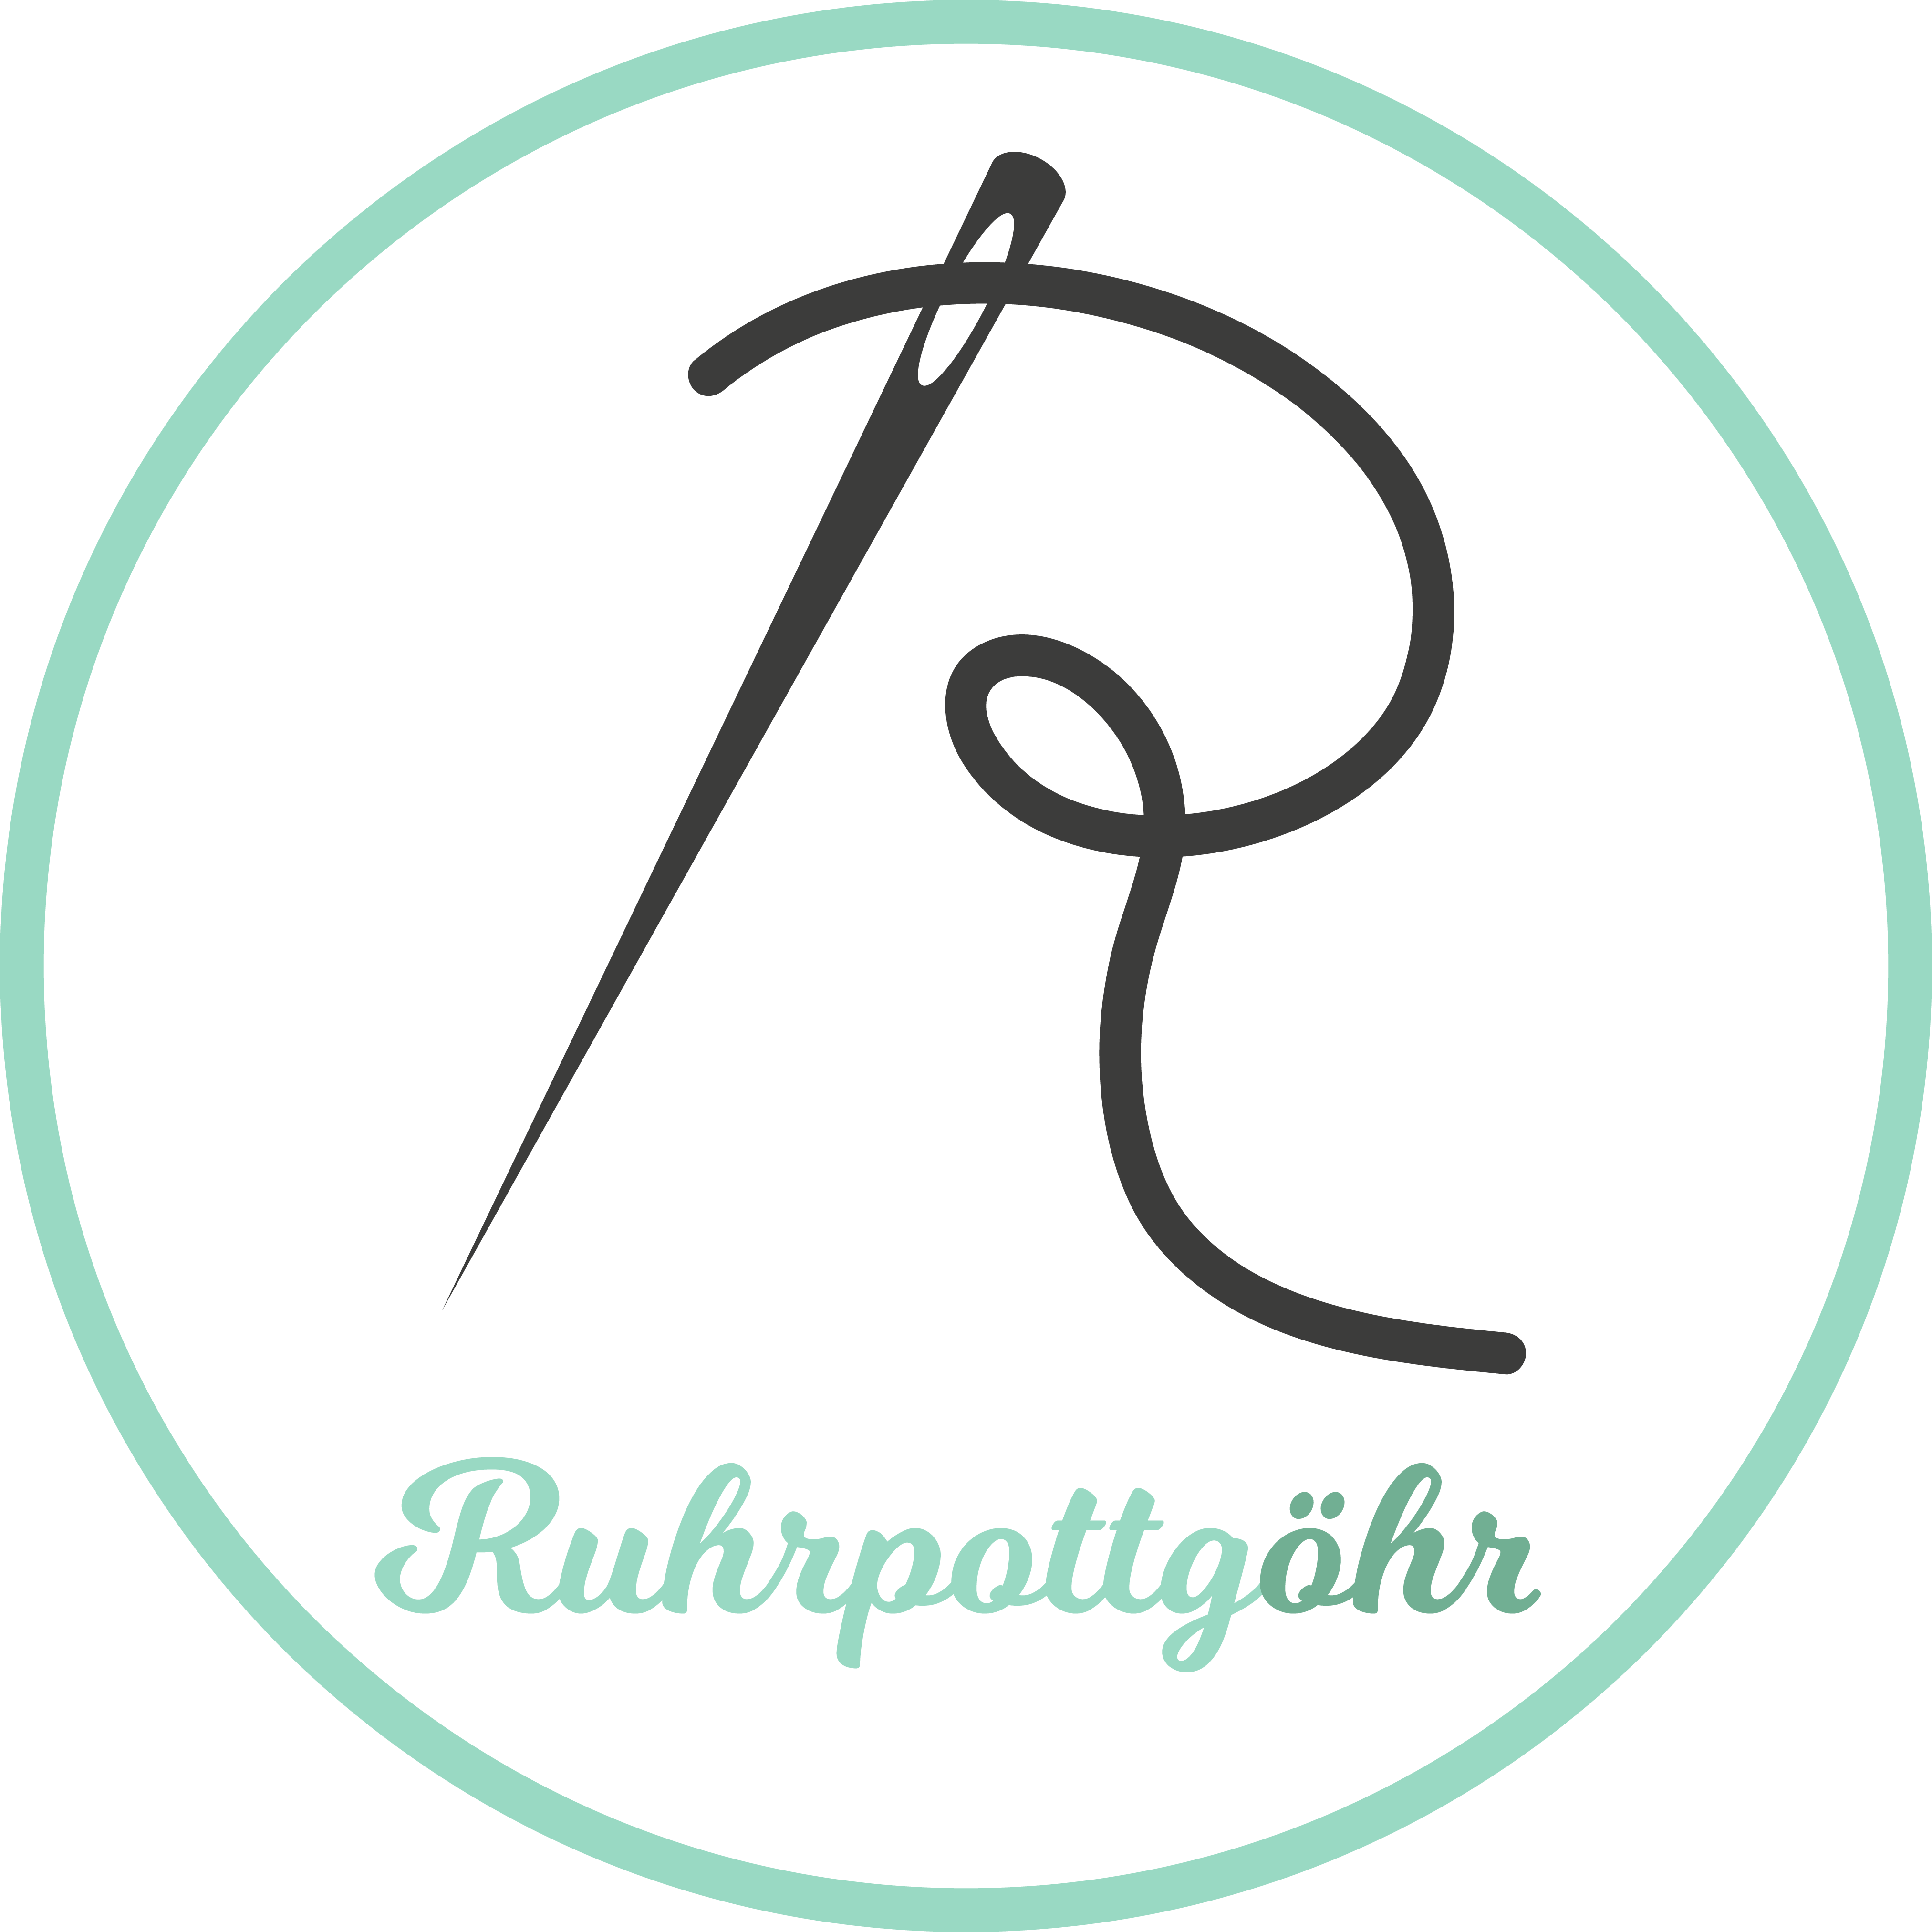 ruhrpottgoehr_logo